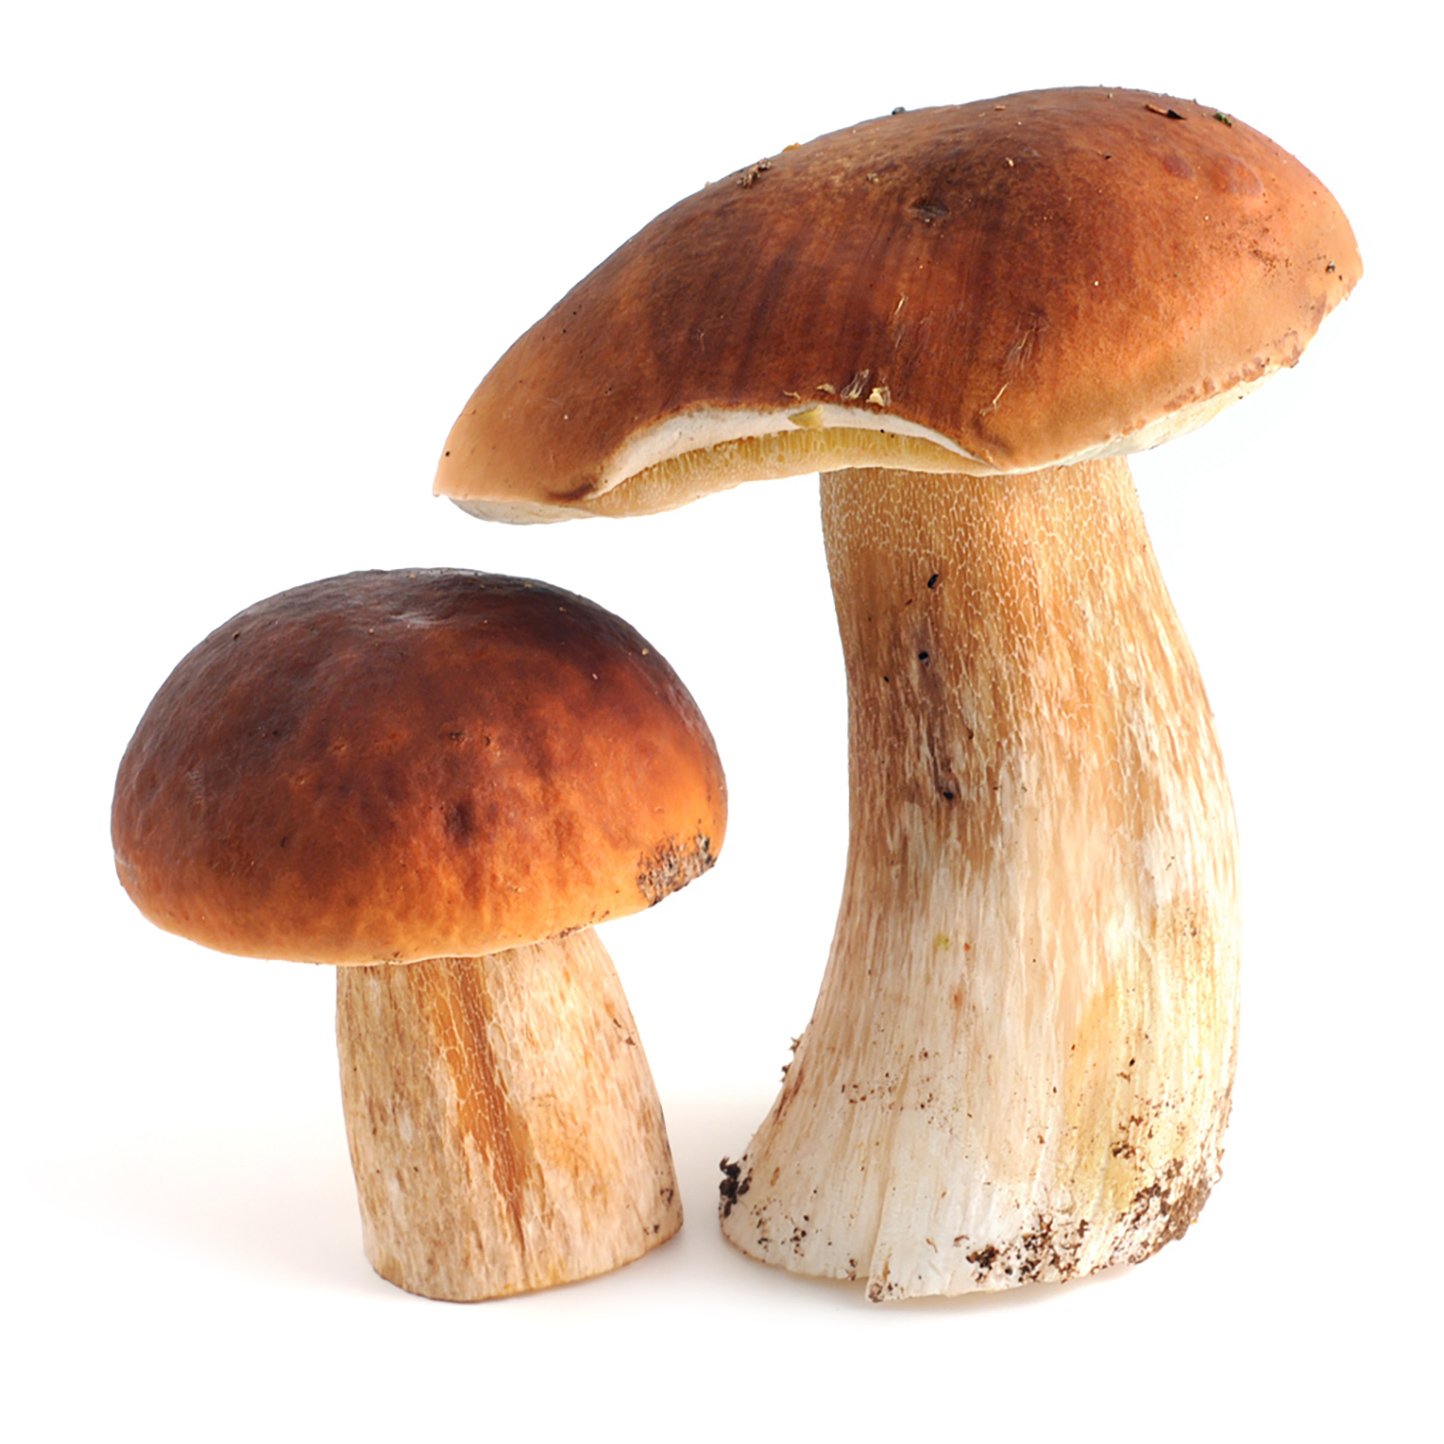 Осенние грибы — когда и какие пойдут, как отличить от опасных двойников